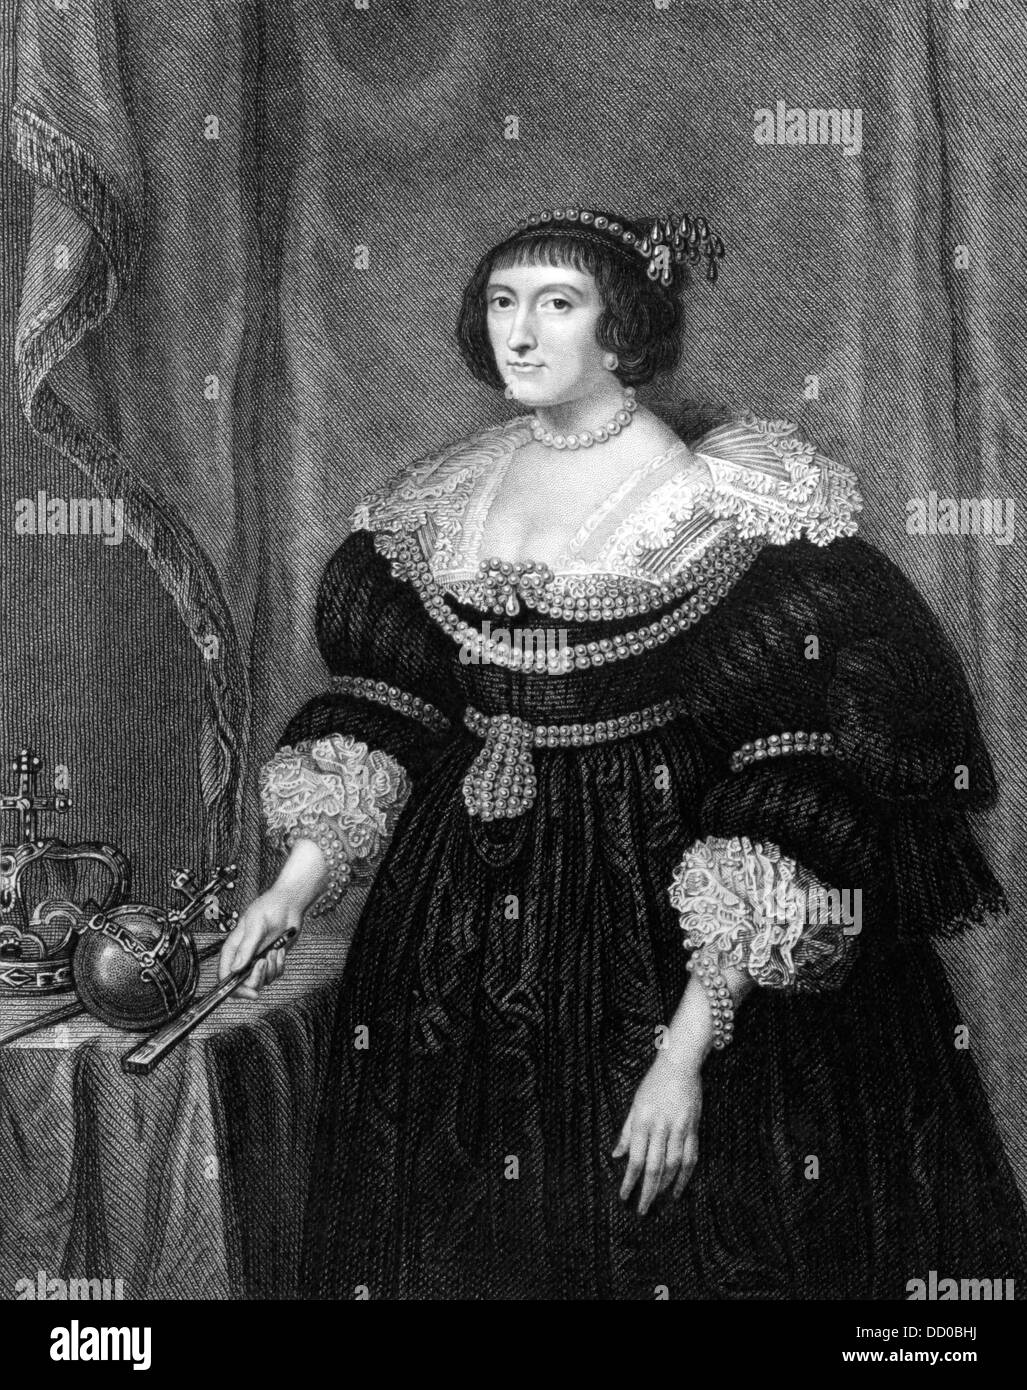 Elizabeth Stuart, reine de Bohême (1596-1662) gravure sur à partir de 1831. Électrice Palatine et brièvement reine de Bohême. Banque D'Images